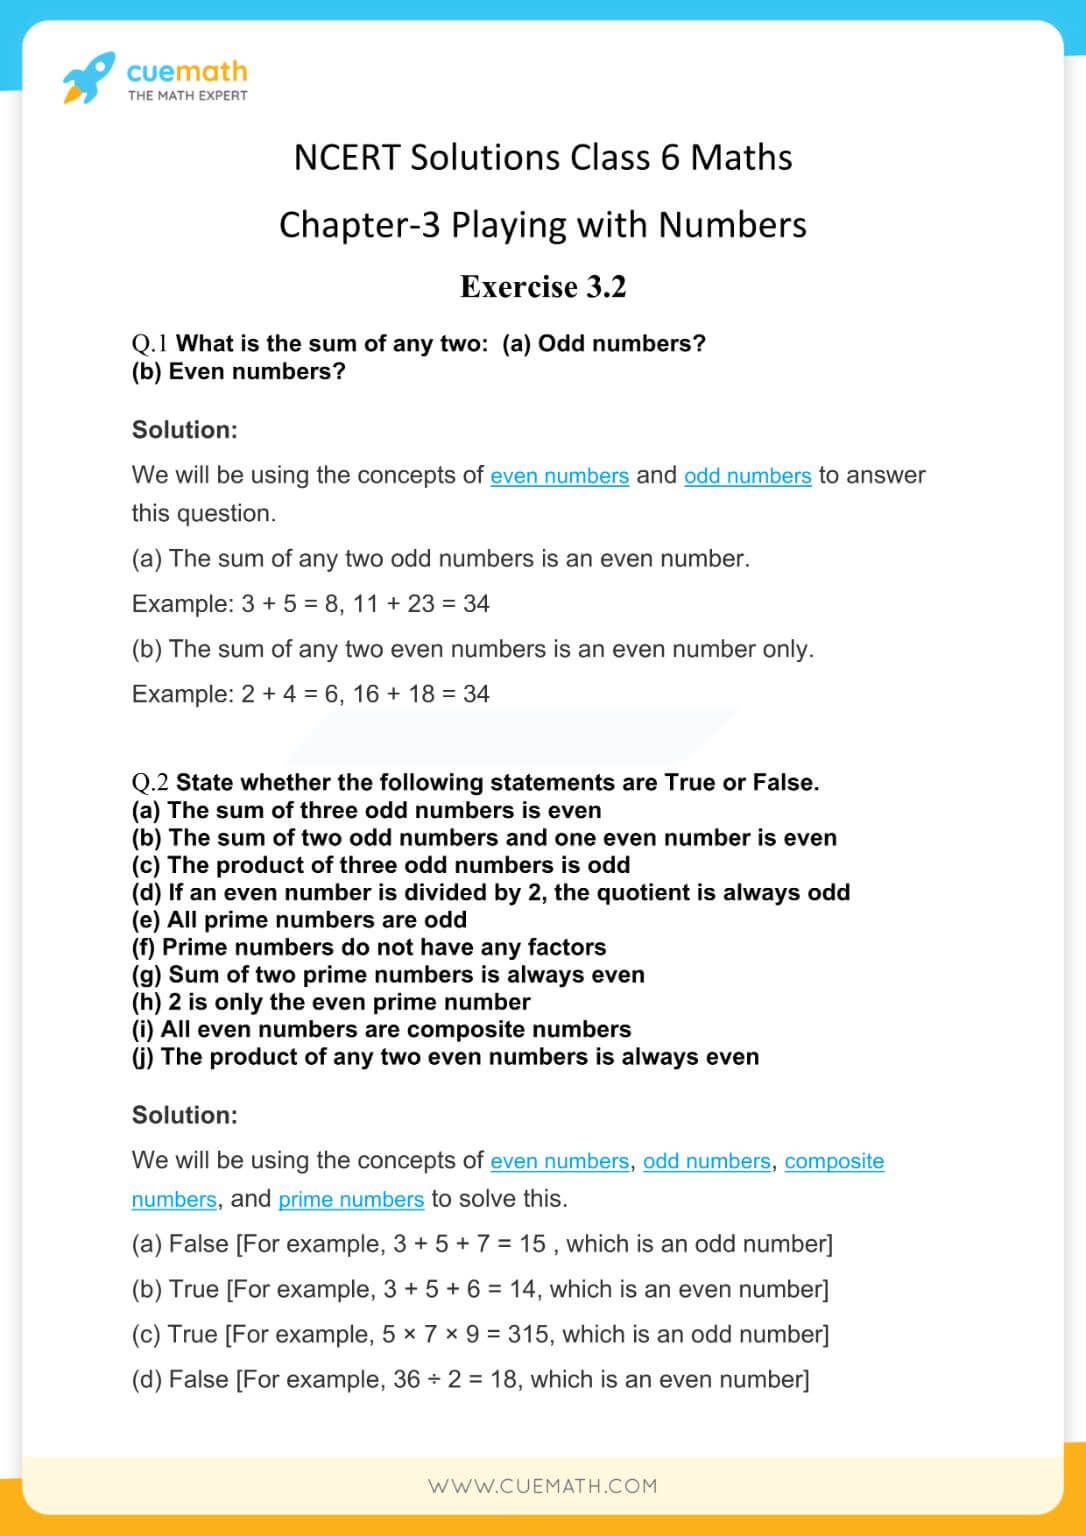 NCERT Solutions Class 6 Maths Chapter 3-4